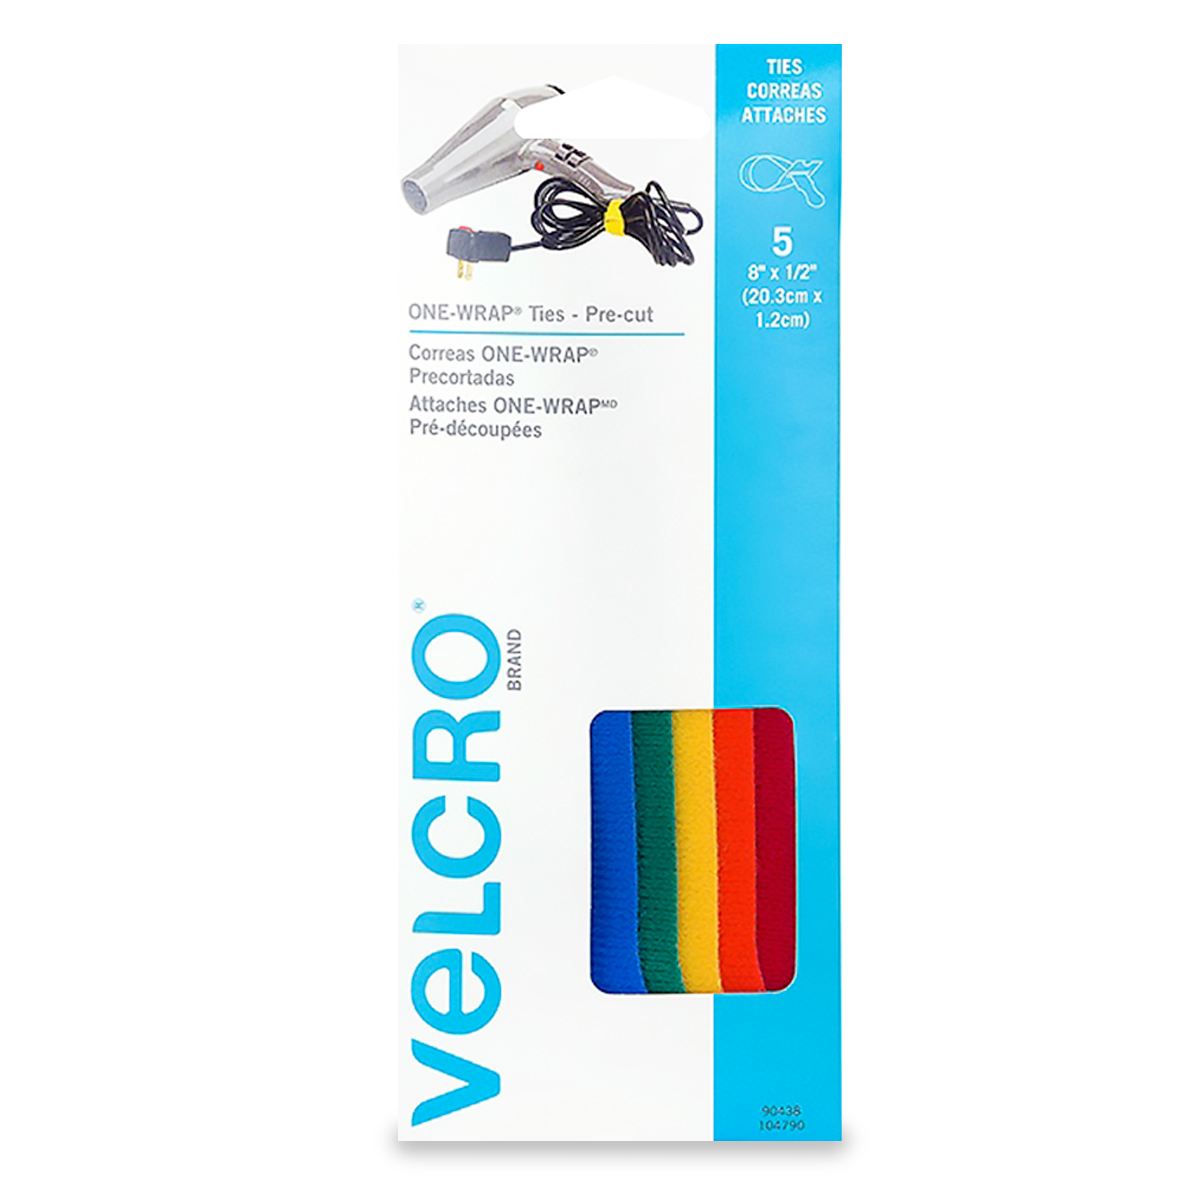 Cinta Velcro – Agencias Vibo